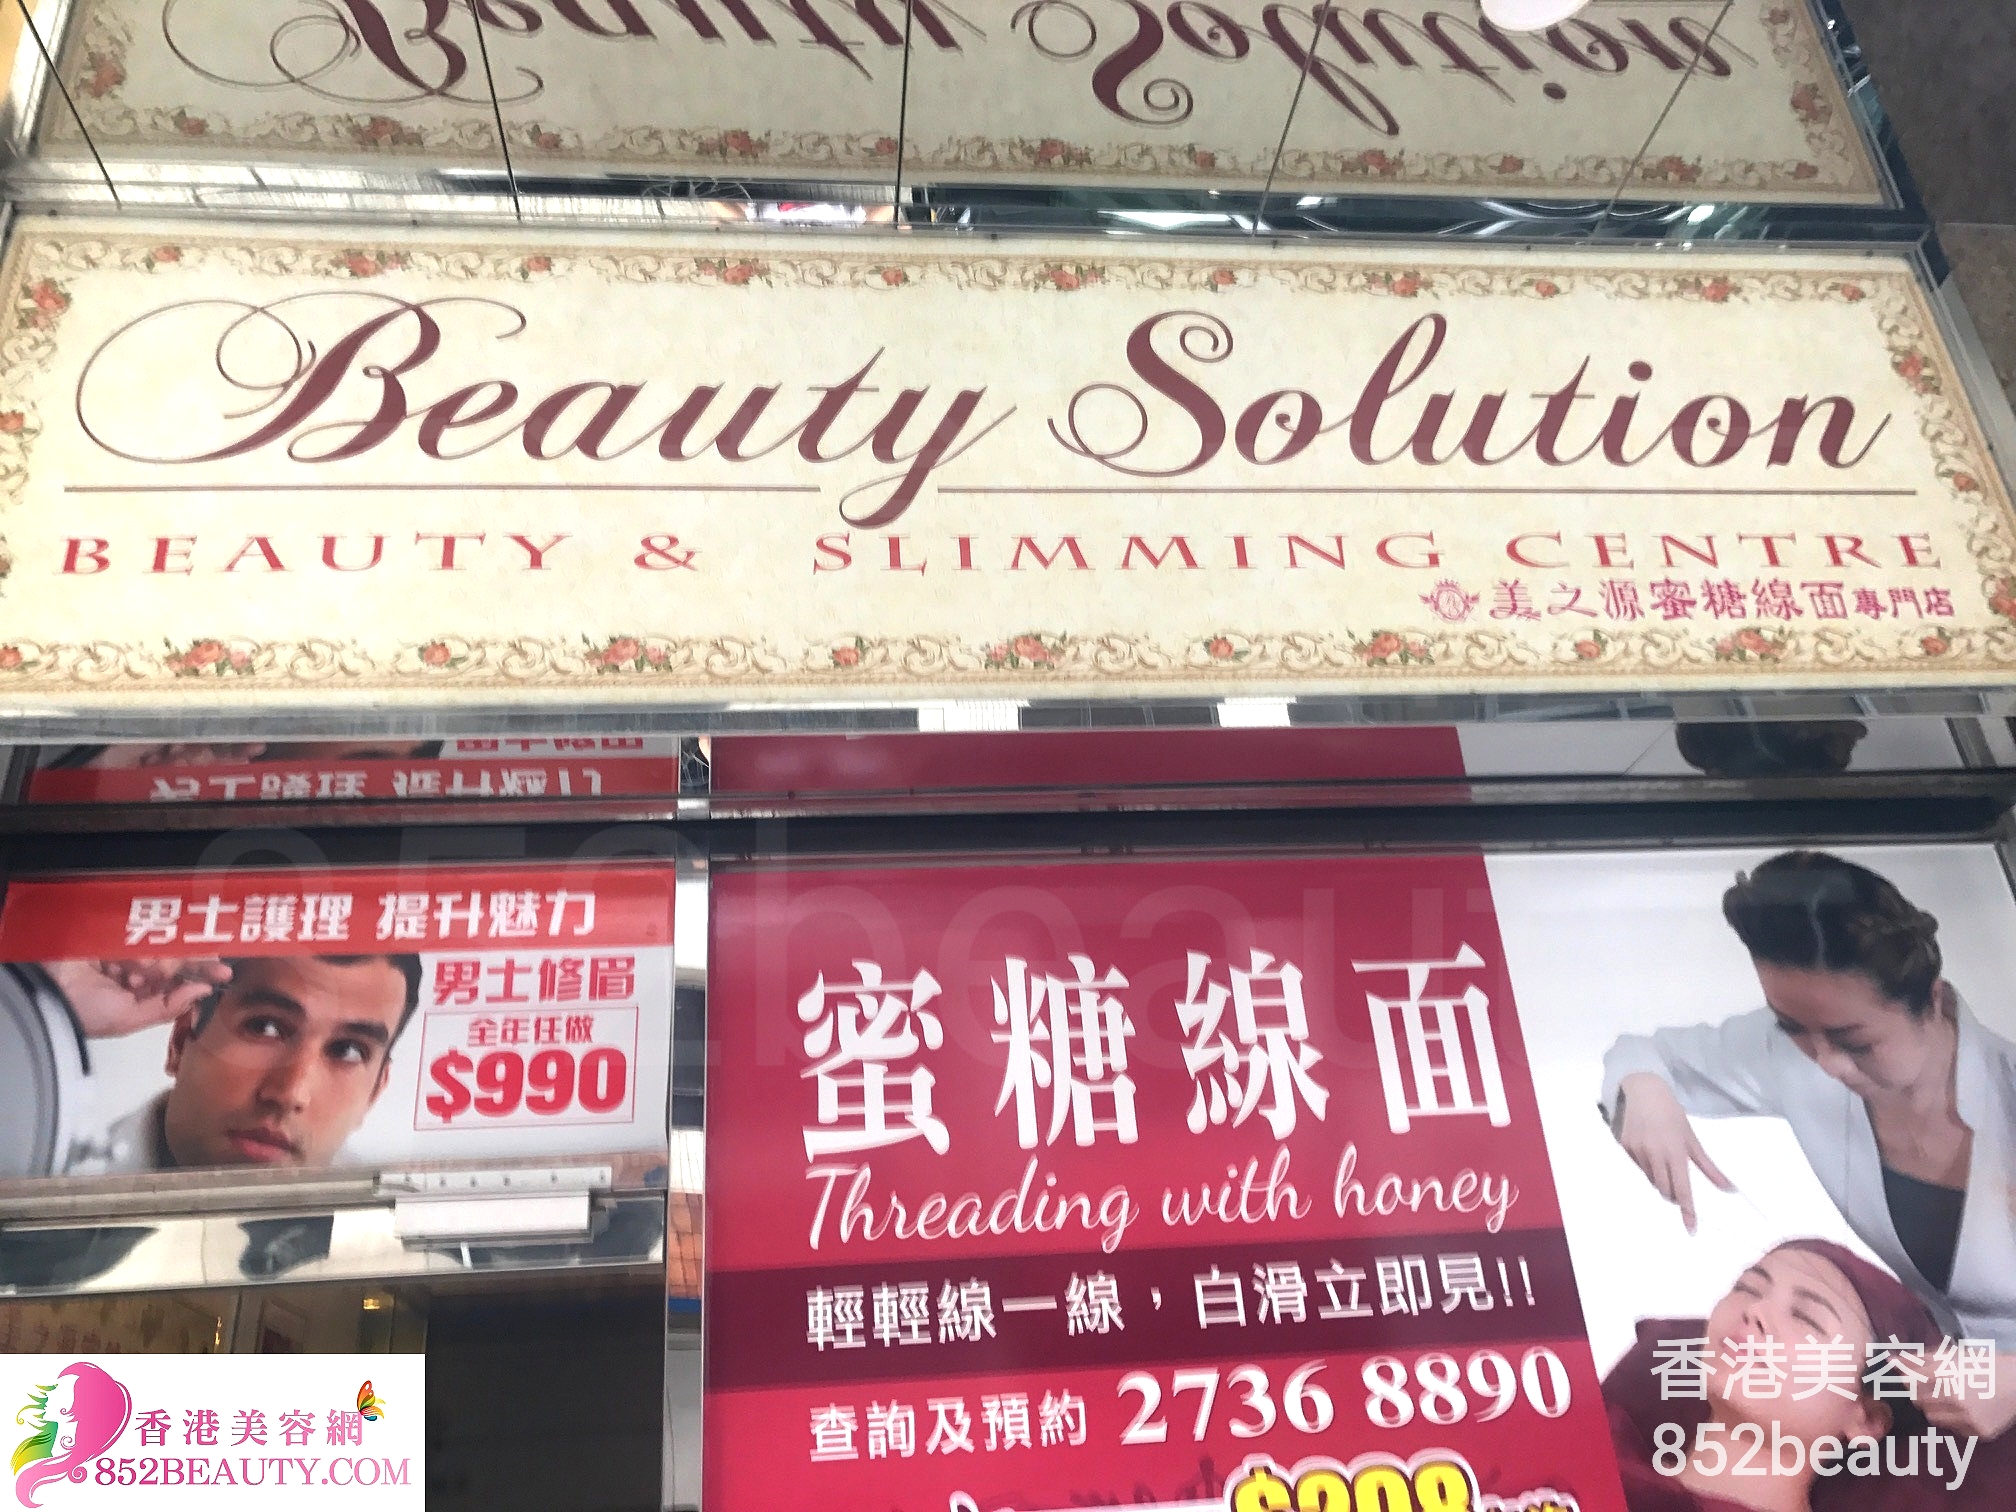 香港美容網 Hong Kong Beauty Salon 美容院 / 美容師: Beauty Solution 美之源蜜糖線面專門店 (佐敦店)